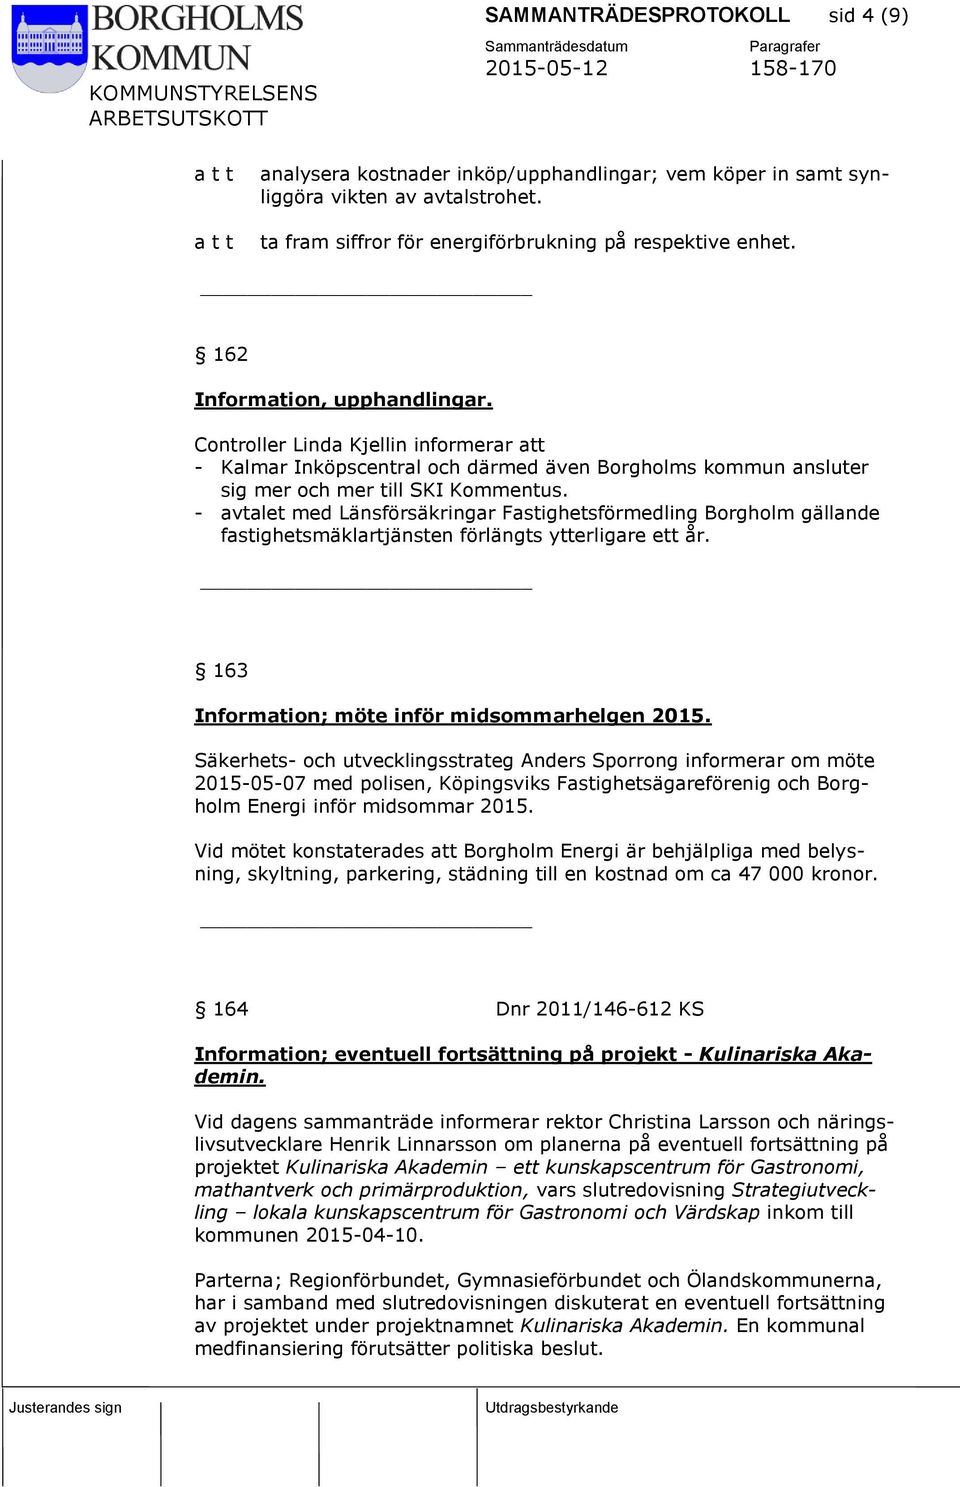 - avtalet med Länsförsäkringar Fastighetsförmedling Borgholm gällande fastighetsmäklartjänsten förlängts ytterligare ett år. 163 Information; möte inför midsommarhelgen 2015.